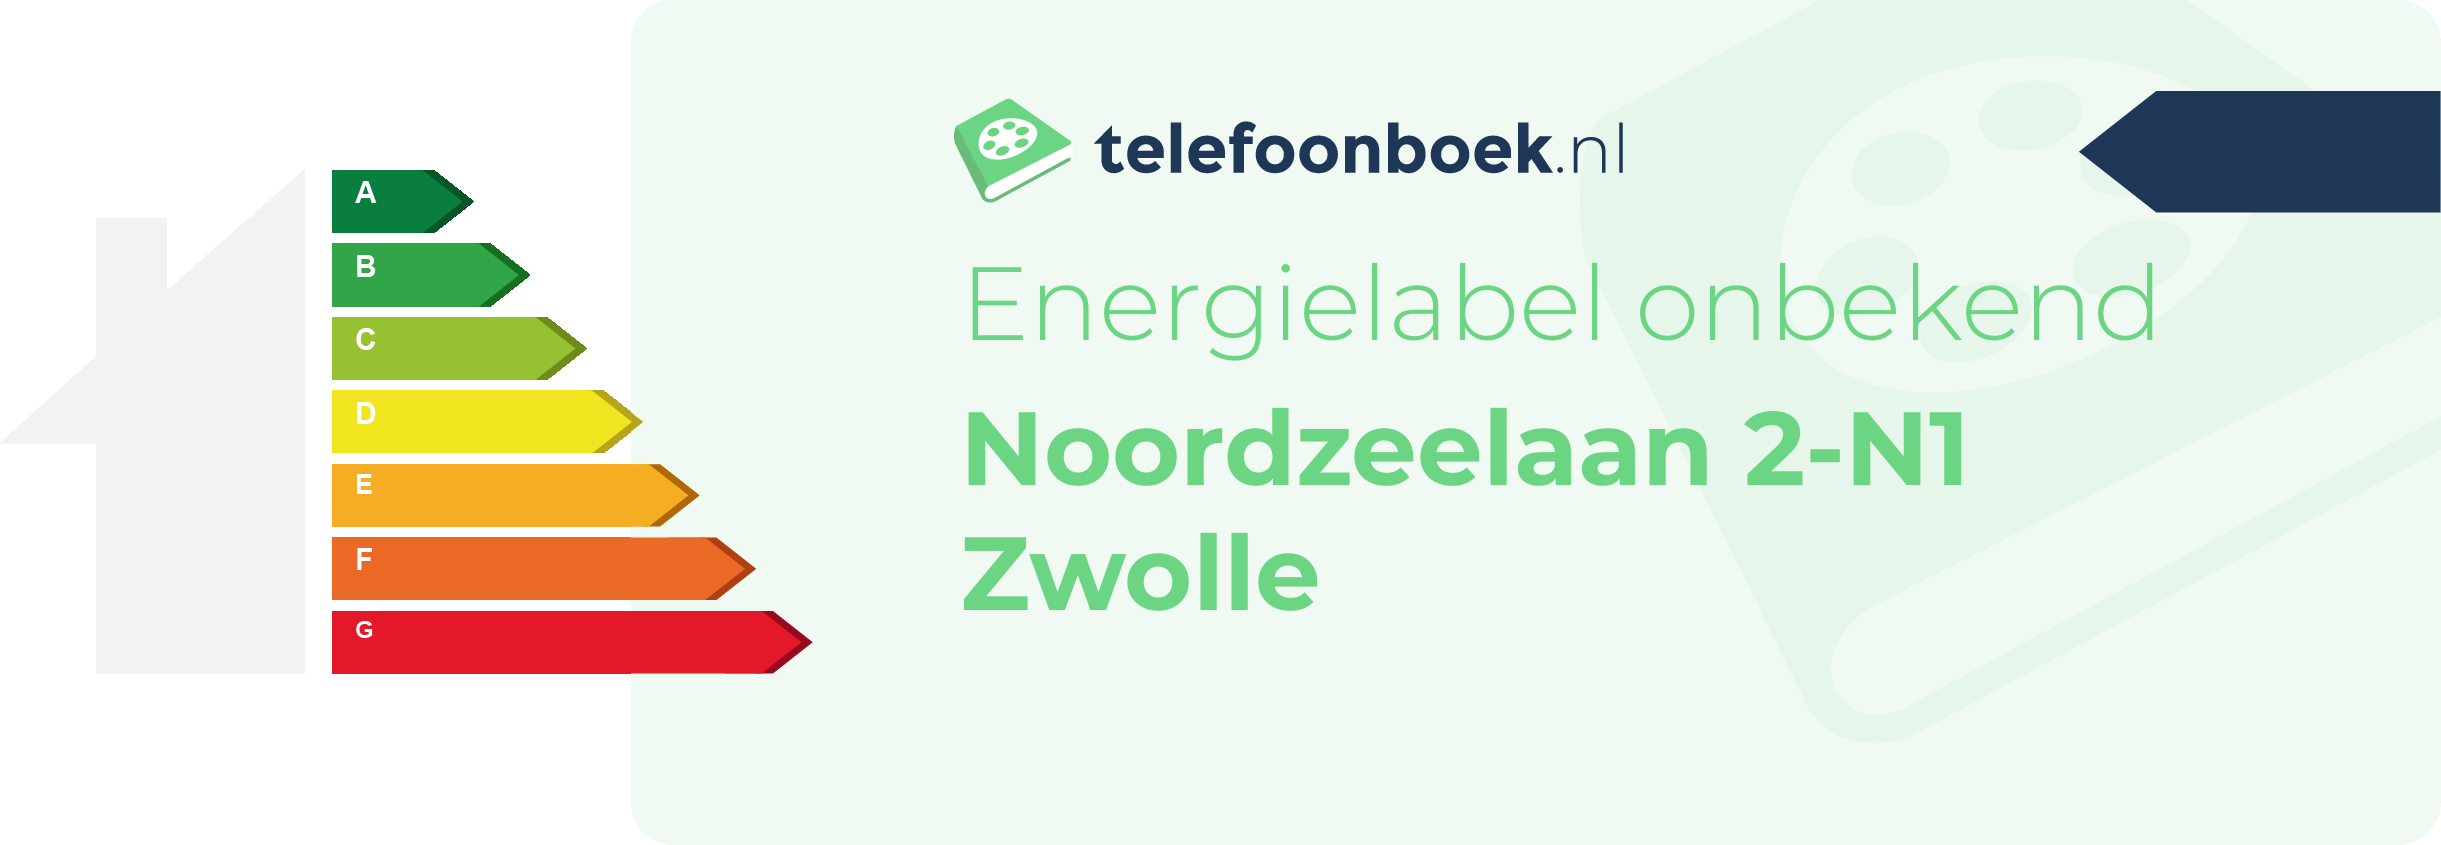 Energielabel Noordzeelaan 2-N1 Zwolle